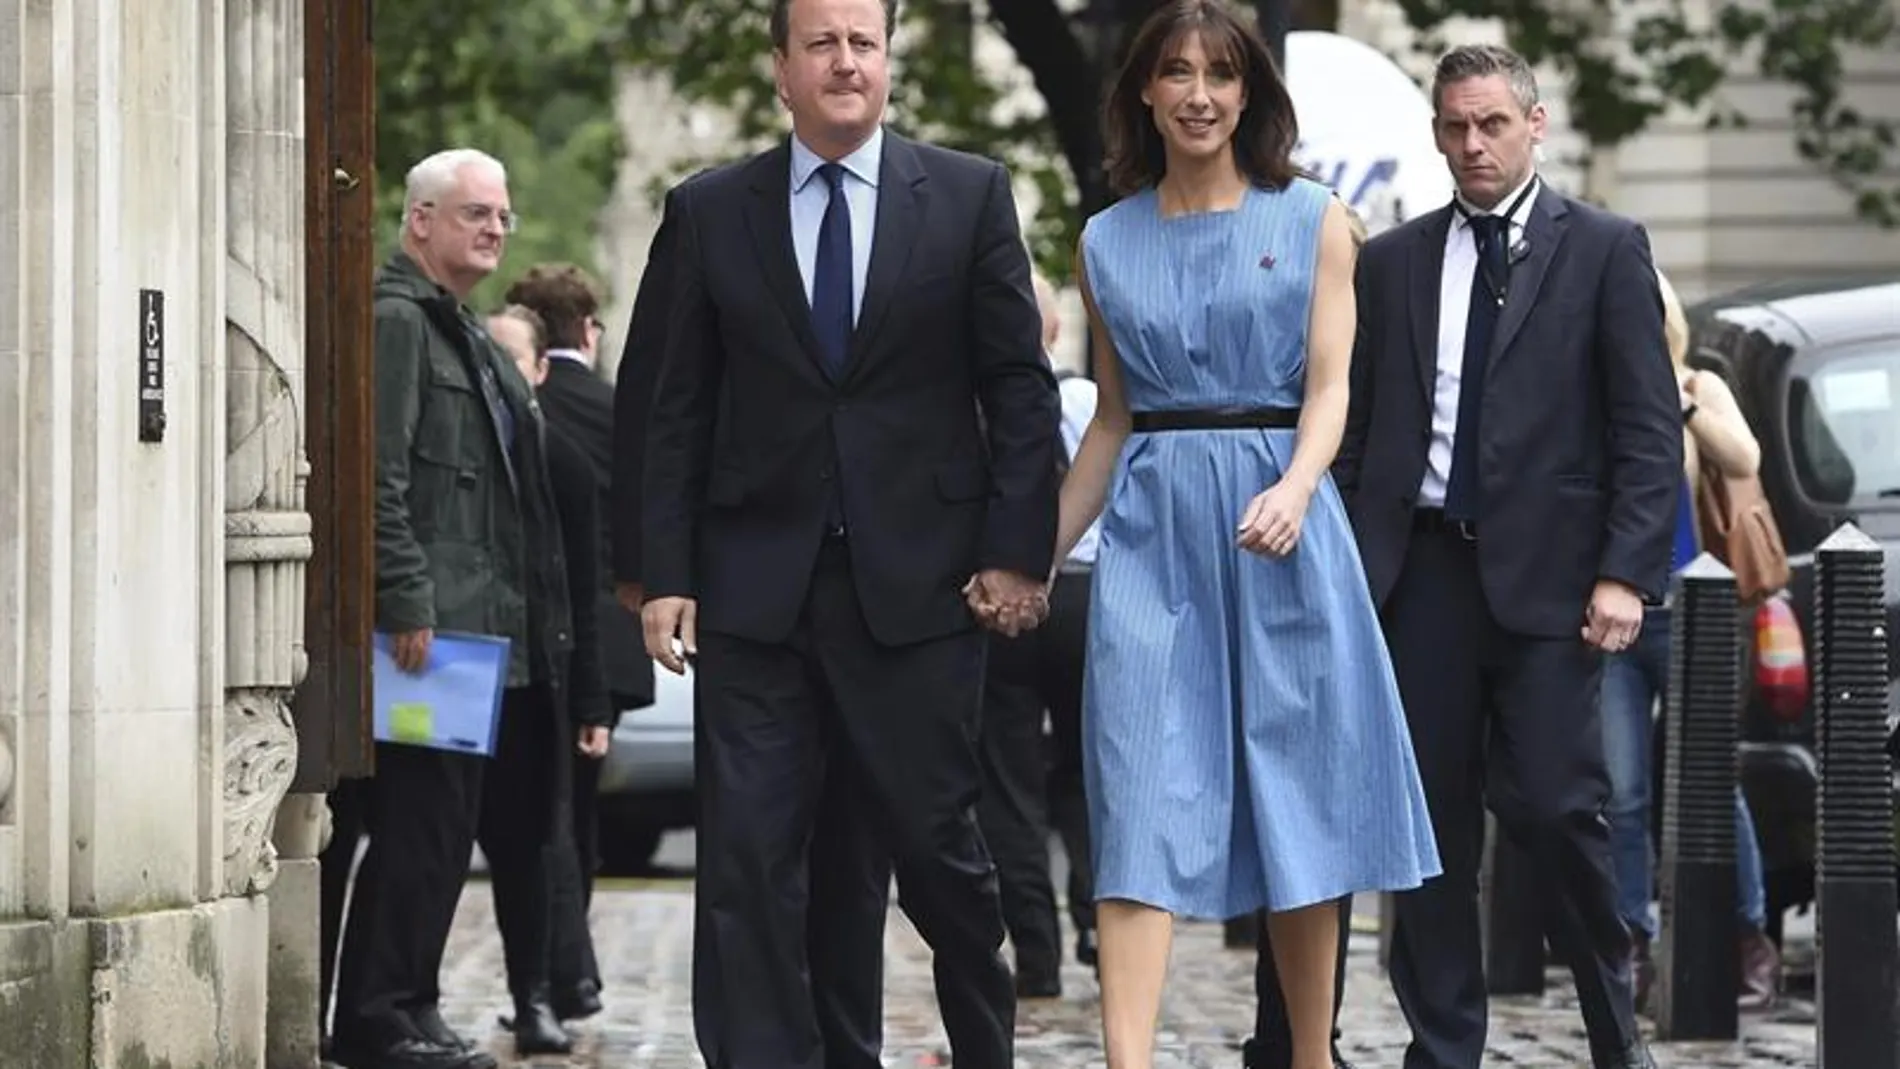 Cameron acudió a la votación vestido con traje y corbata oscuros, mientras que su esposa llevaba un vestido azul sin mangas ajustado con un cinturón negro